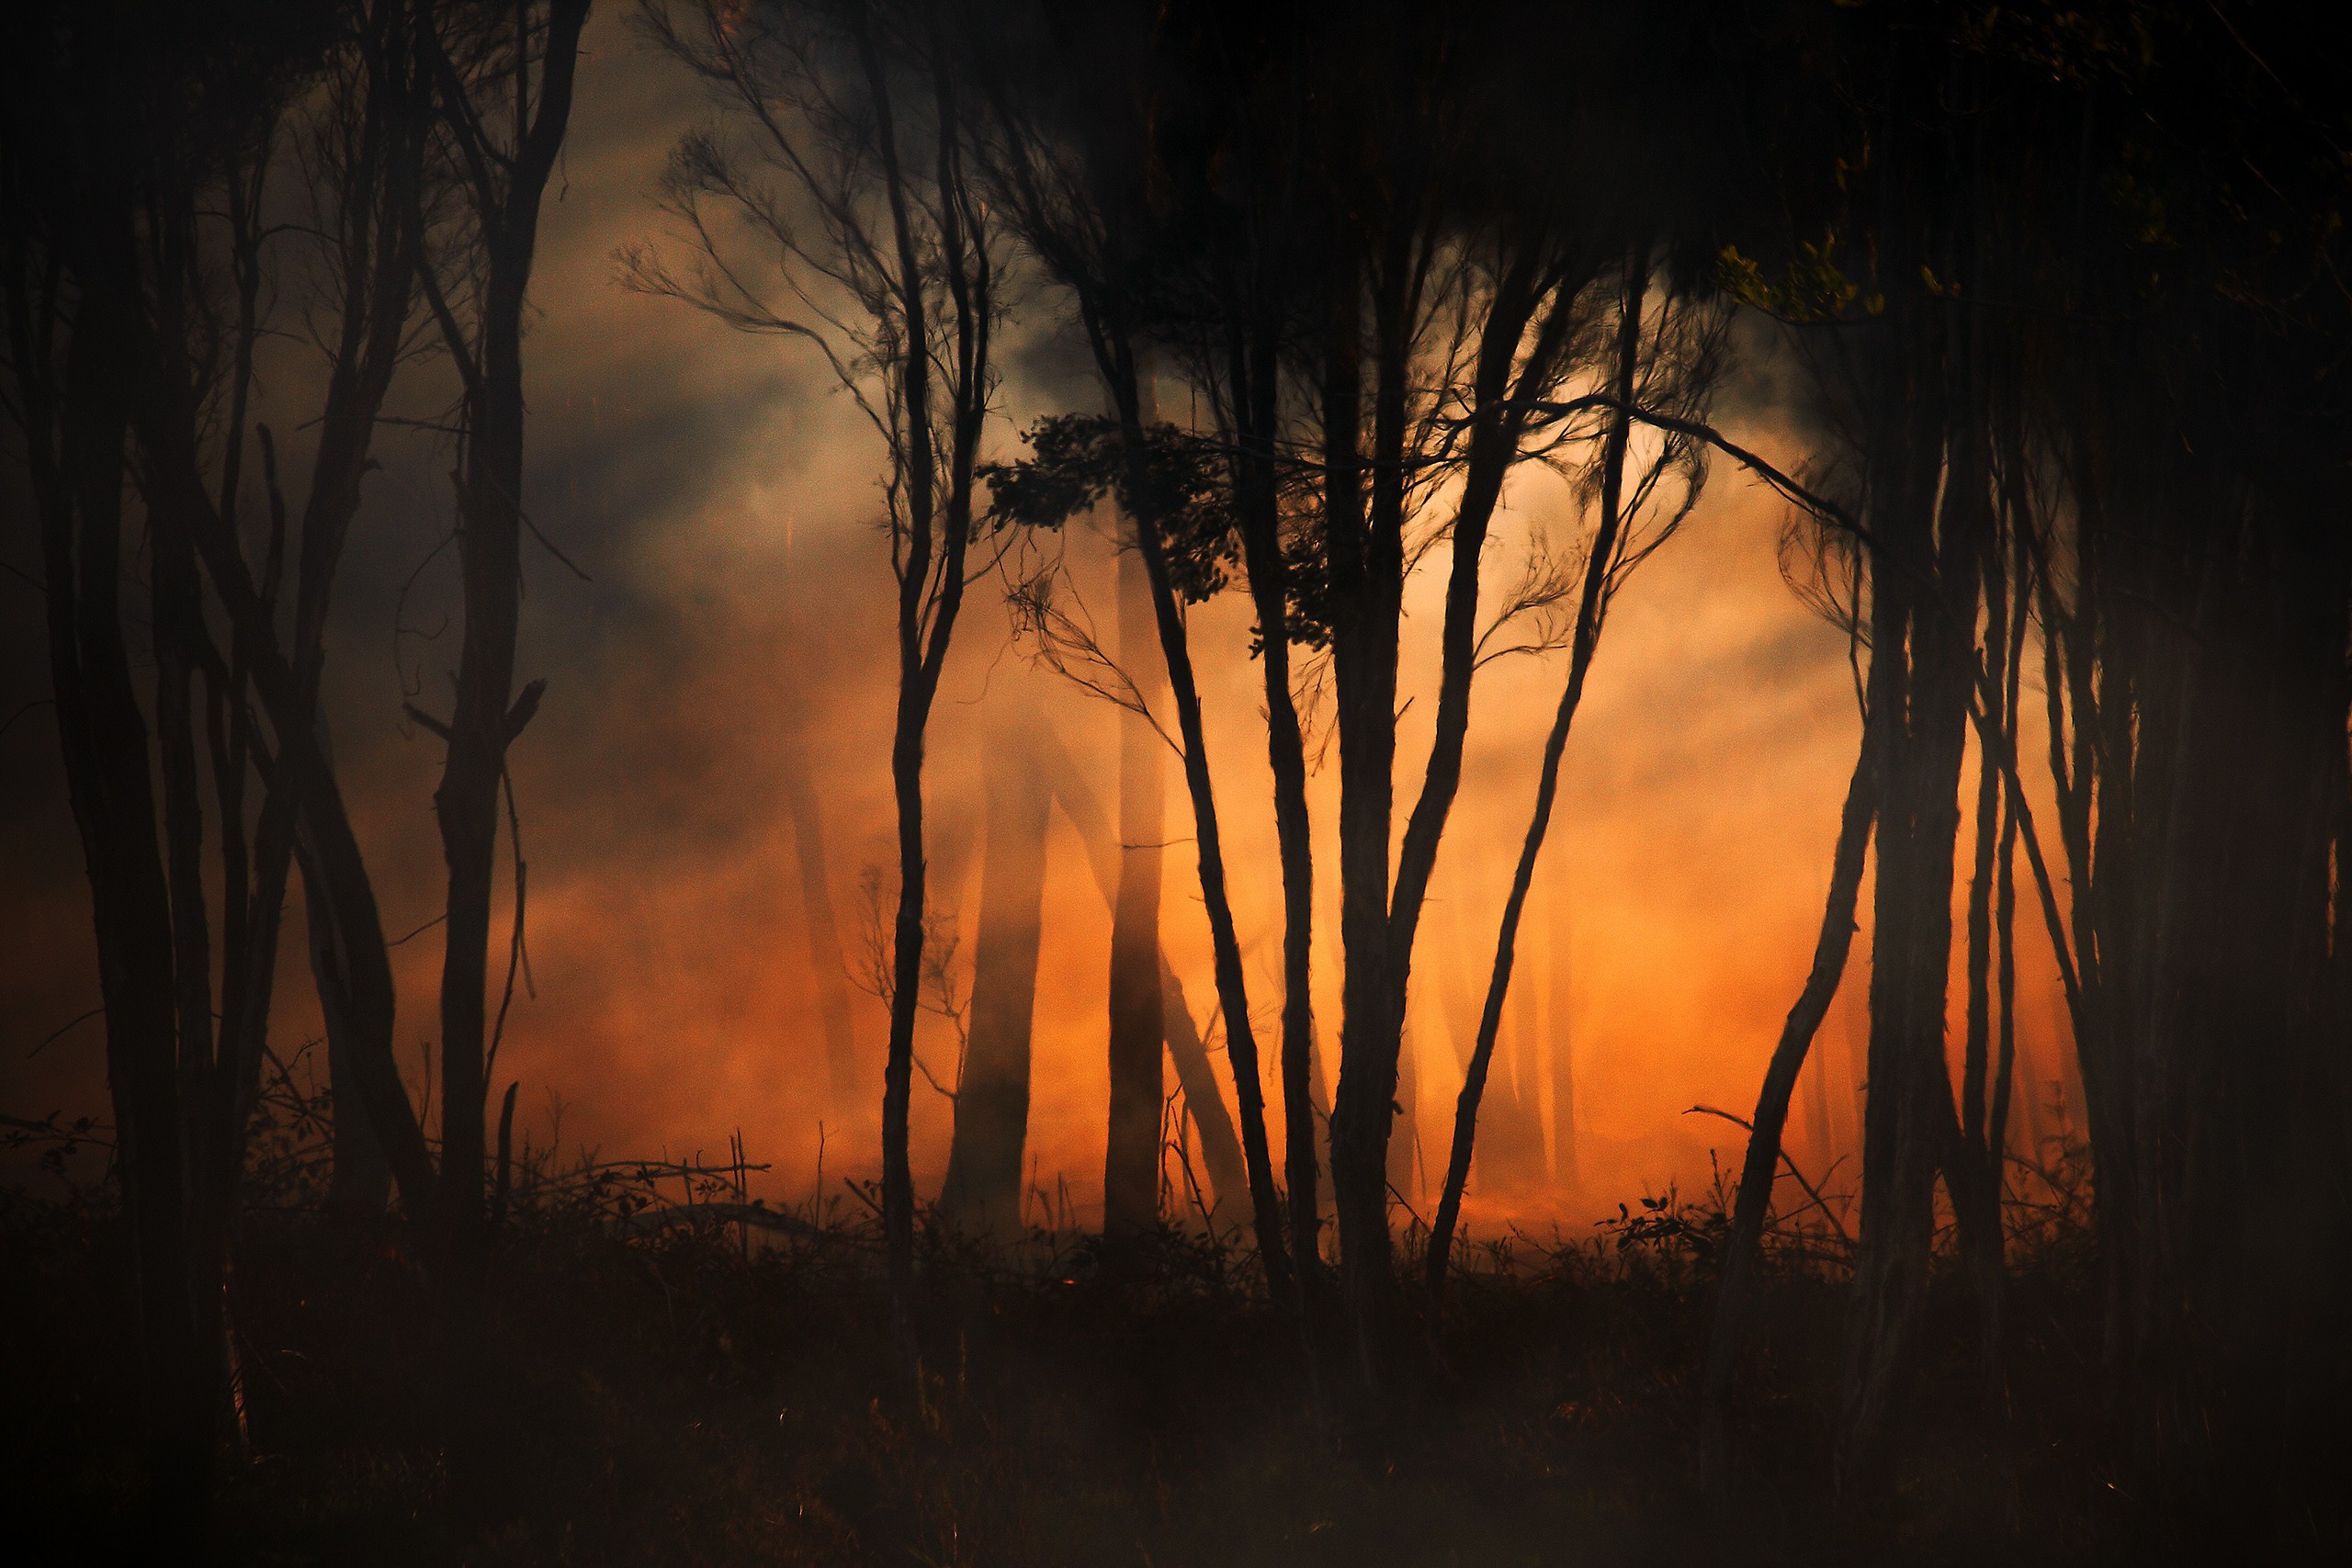 Ночной пожар в лесу